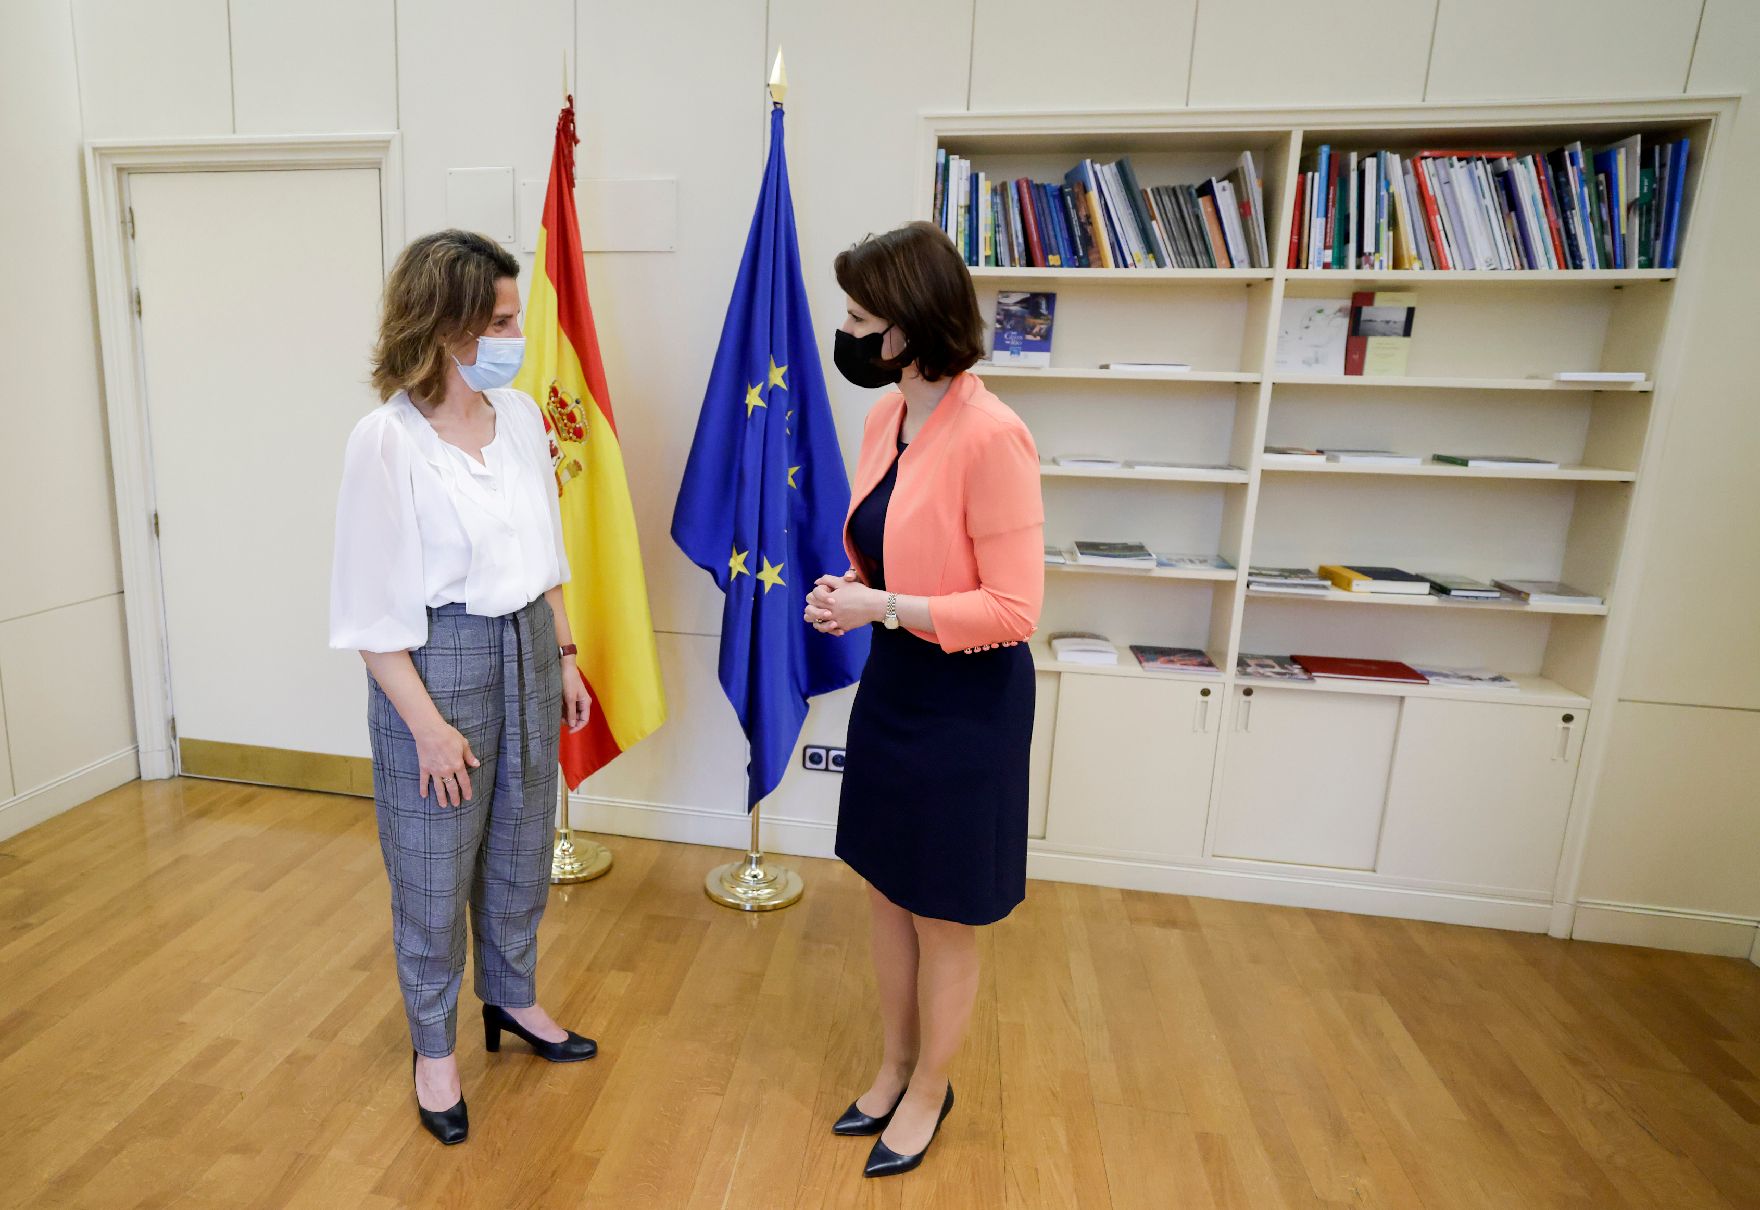 Am 26. April 2021 traf Bundesministerin Karoline Edtstadler (r.) im Rahmen ihres Madridbesuchs die Ministerin für ökologischen Wandel Teresa Ribera (l.).